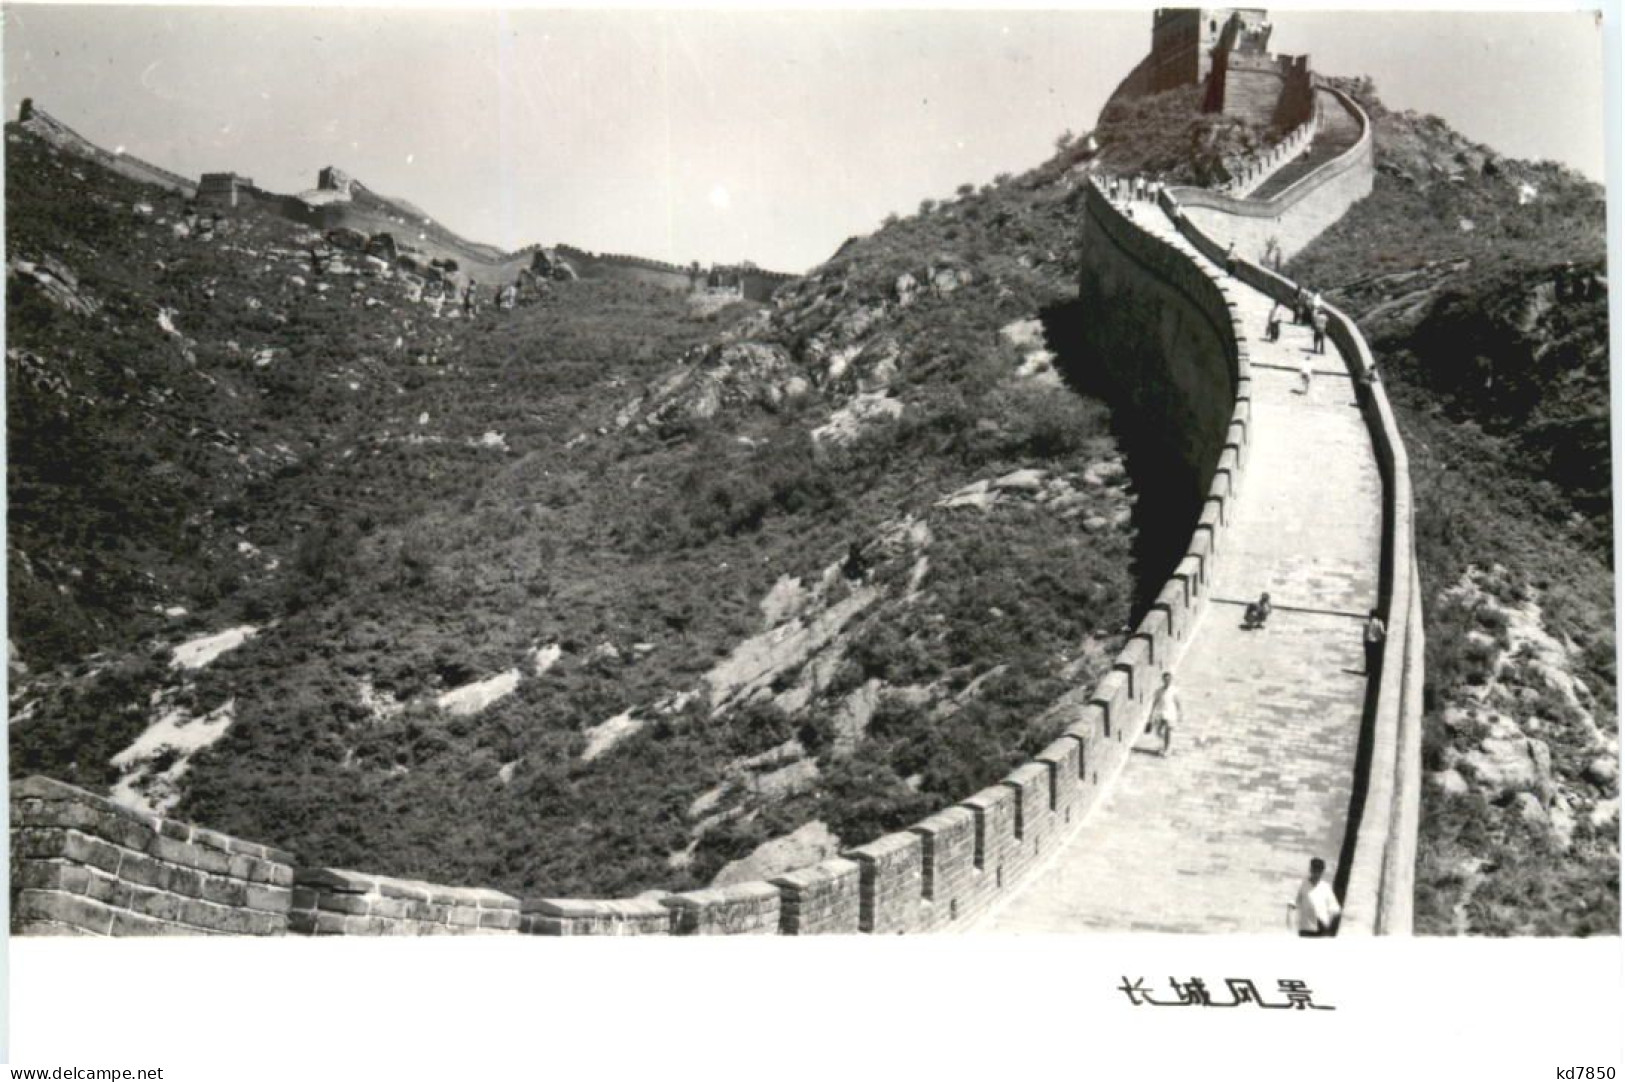 China - Great Wall - China